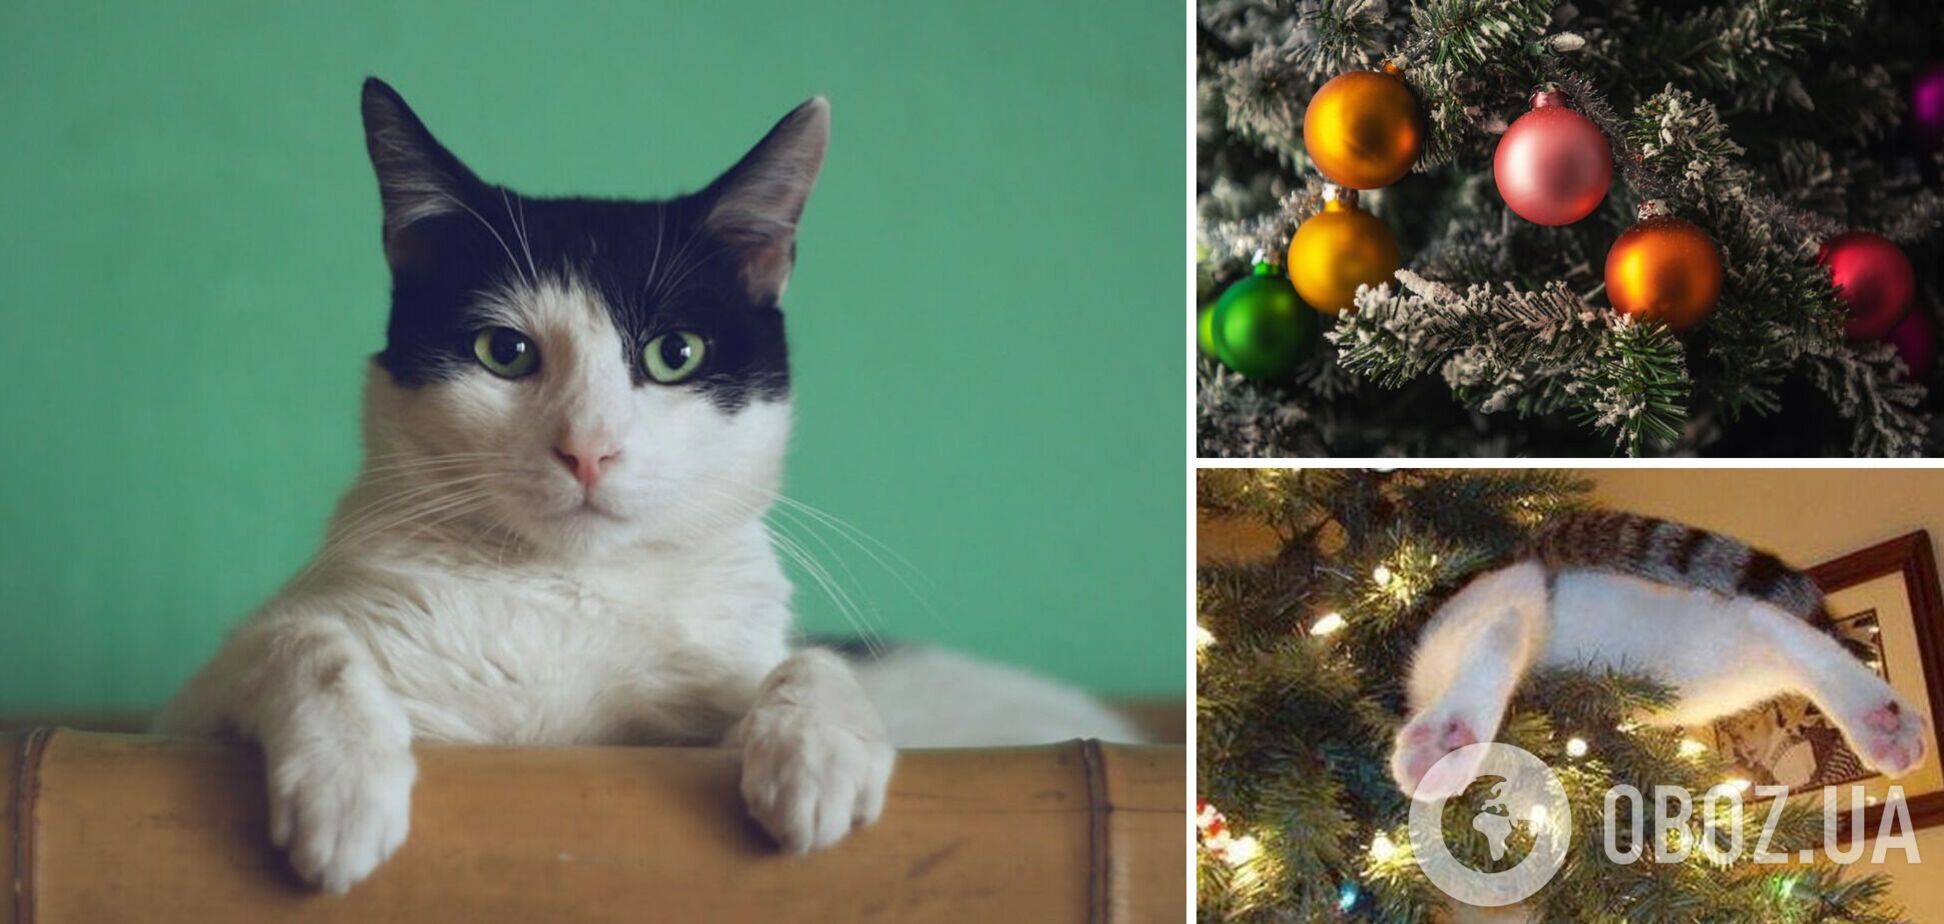 Як врятувати новорічну ялинку від кота: вчені розкритикували лайфхак з TikTok